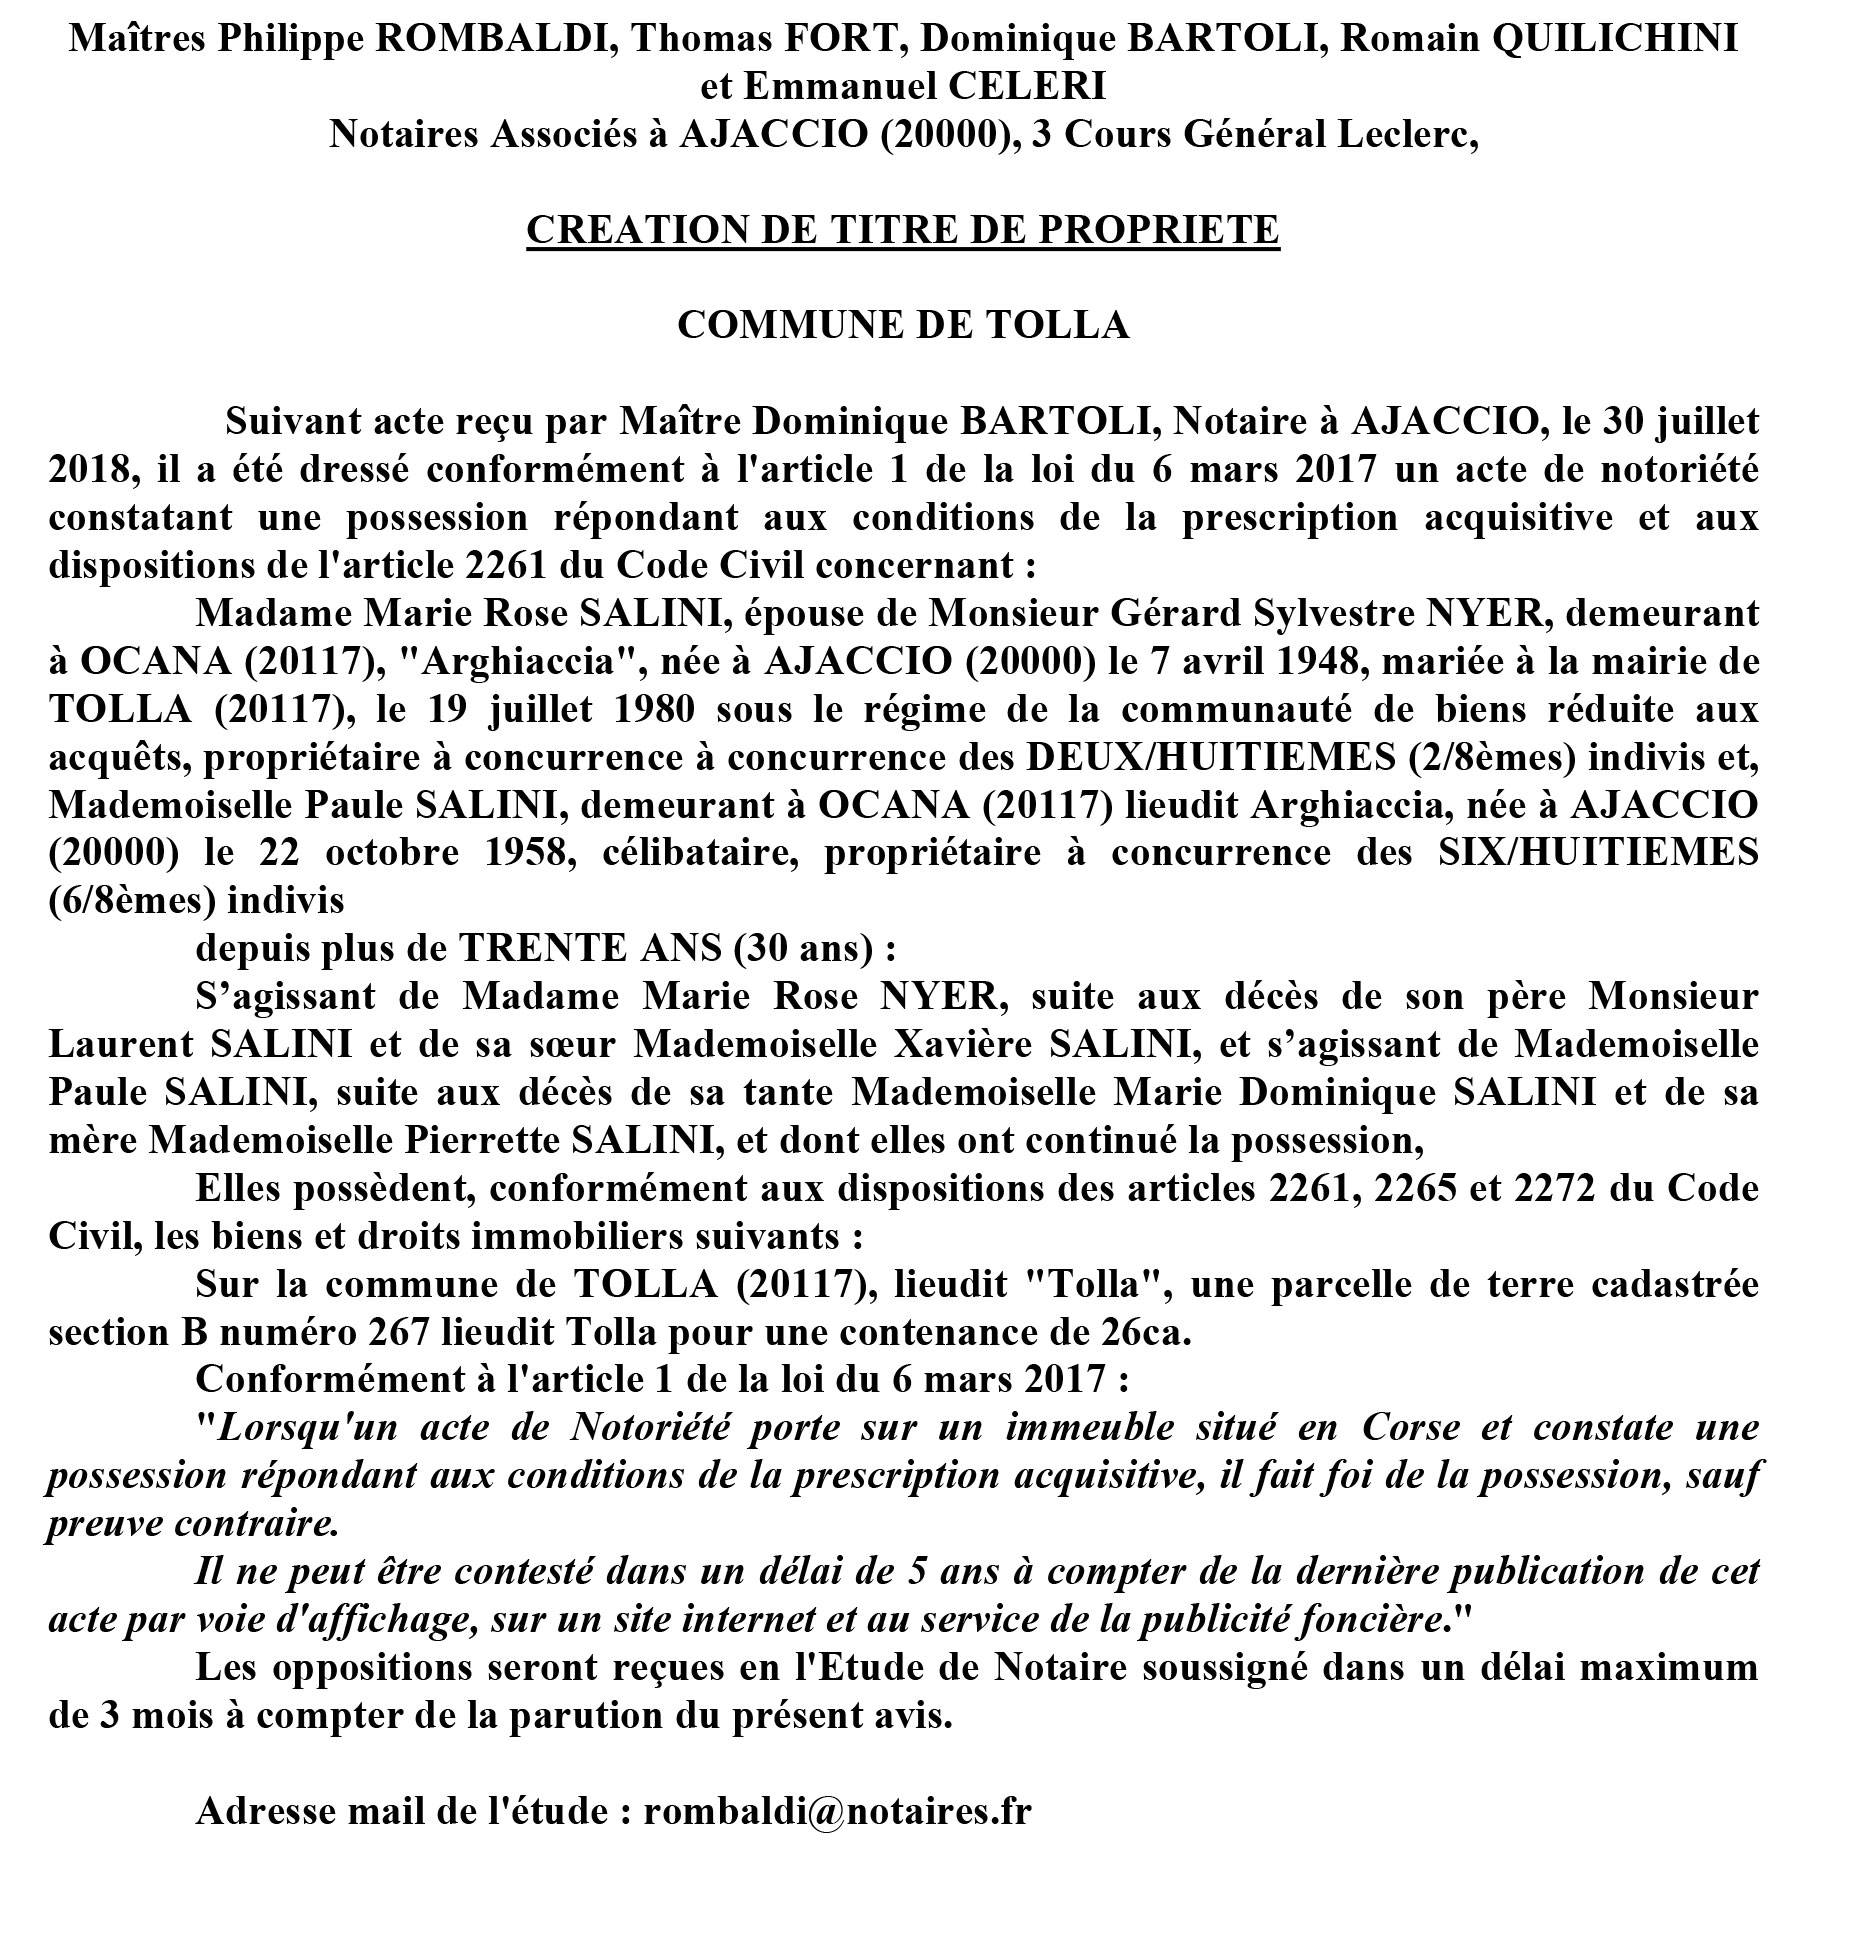 Avis de création de titre de propriété - commune de Tolla (Corse du Sud)